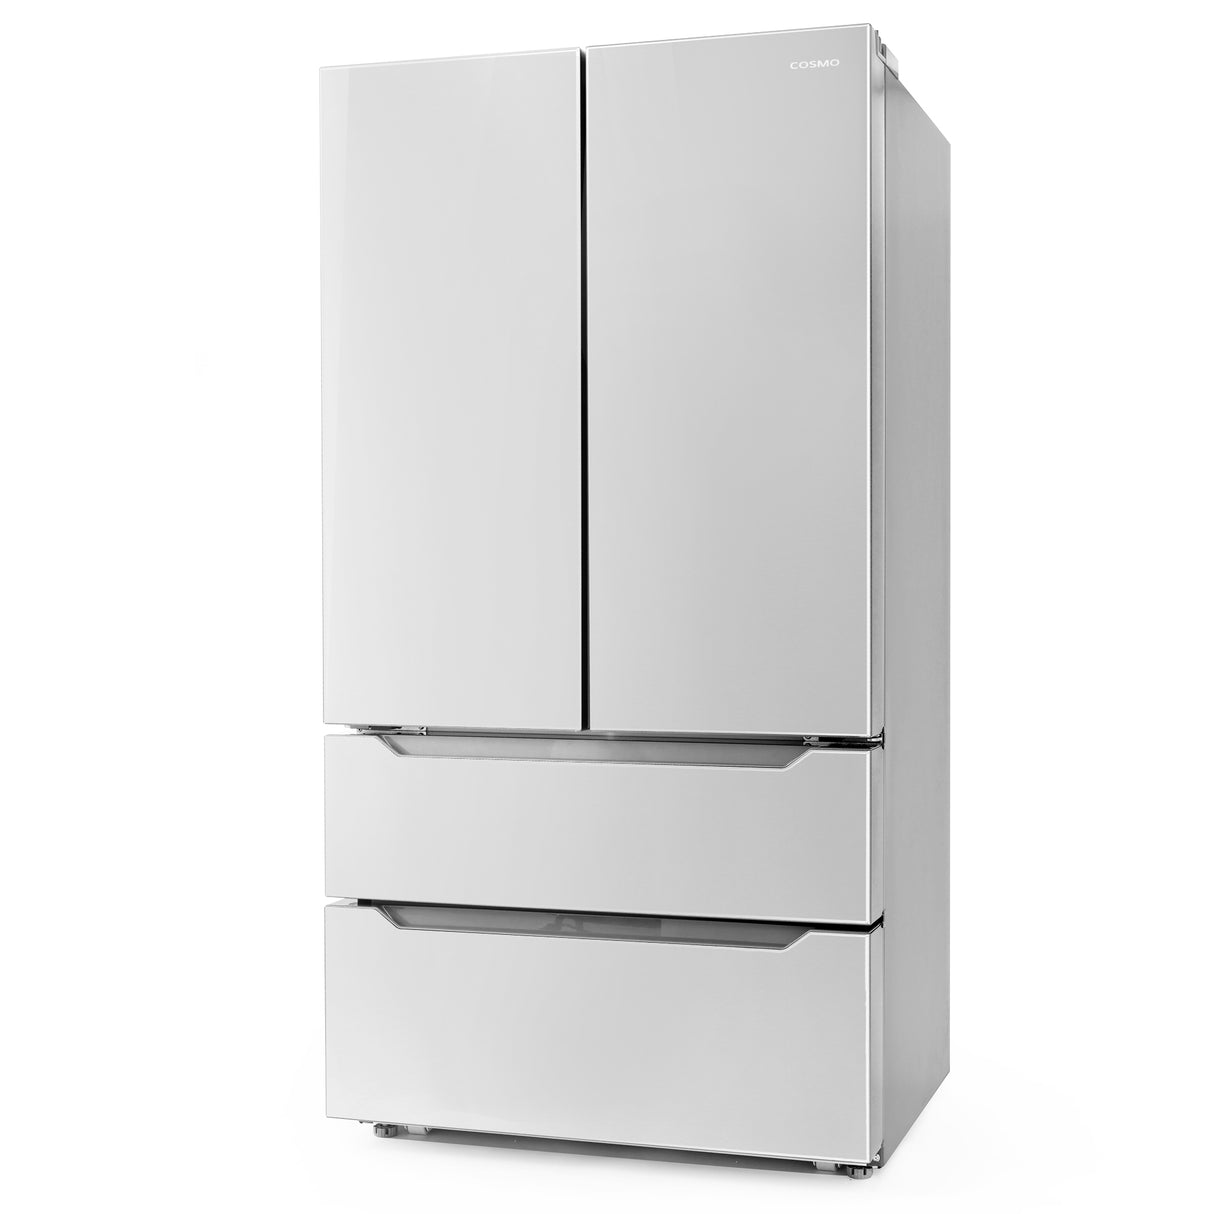 Cosmo 22.5 cu. ft. 4-Door French Door Refrigerator with Recessed Handle in Stainless Steel, Counter Depth